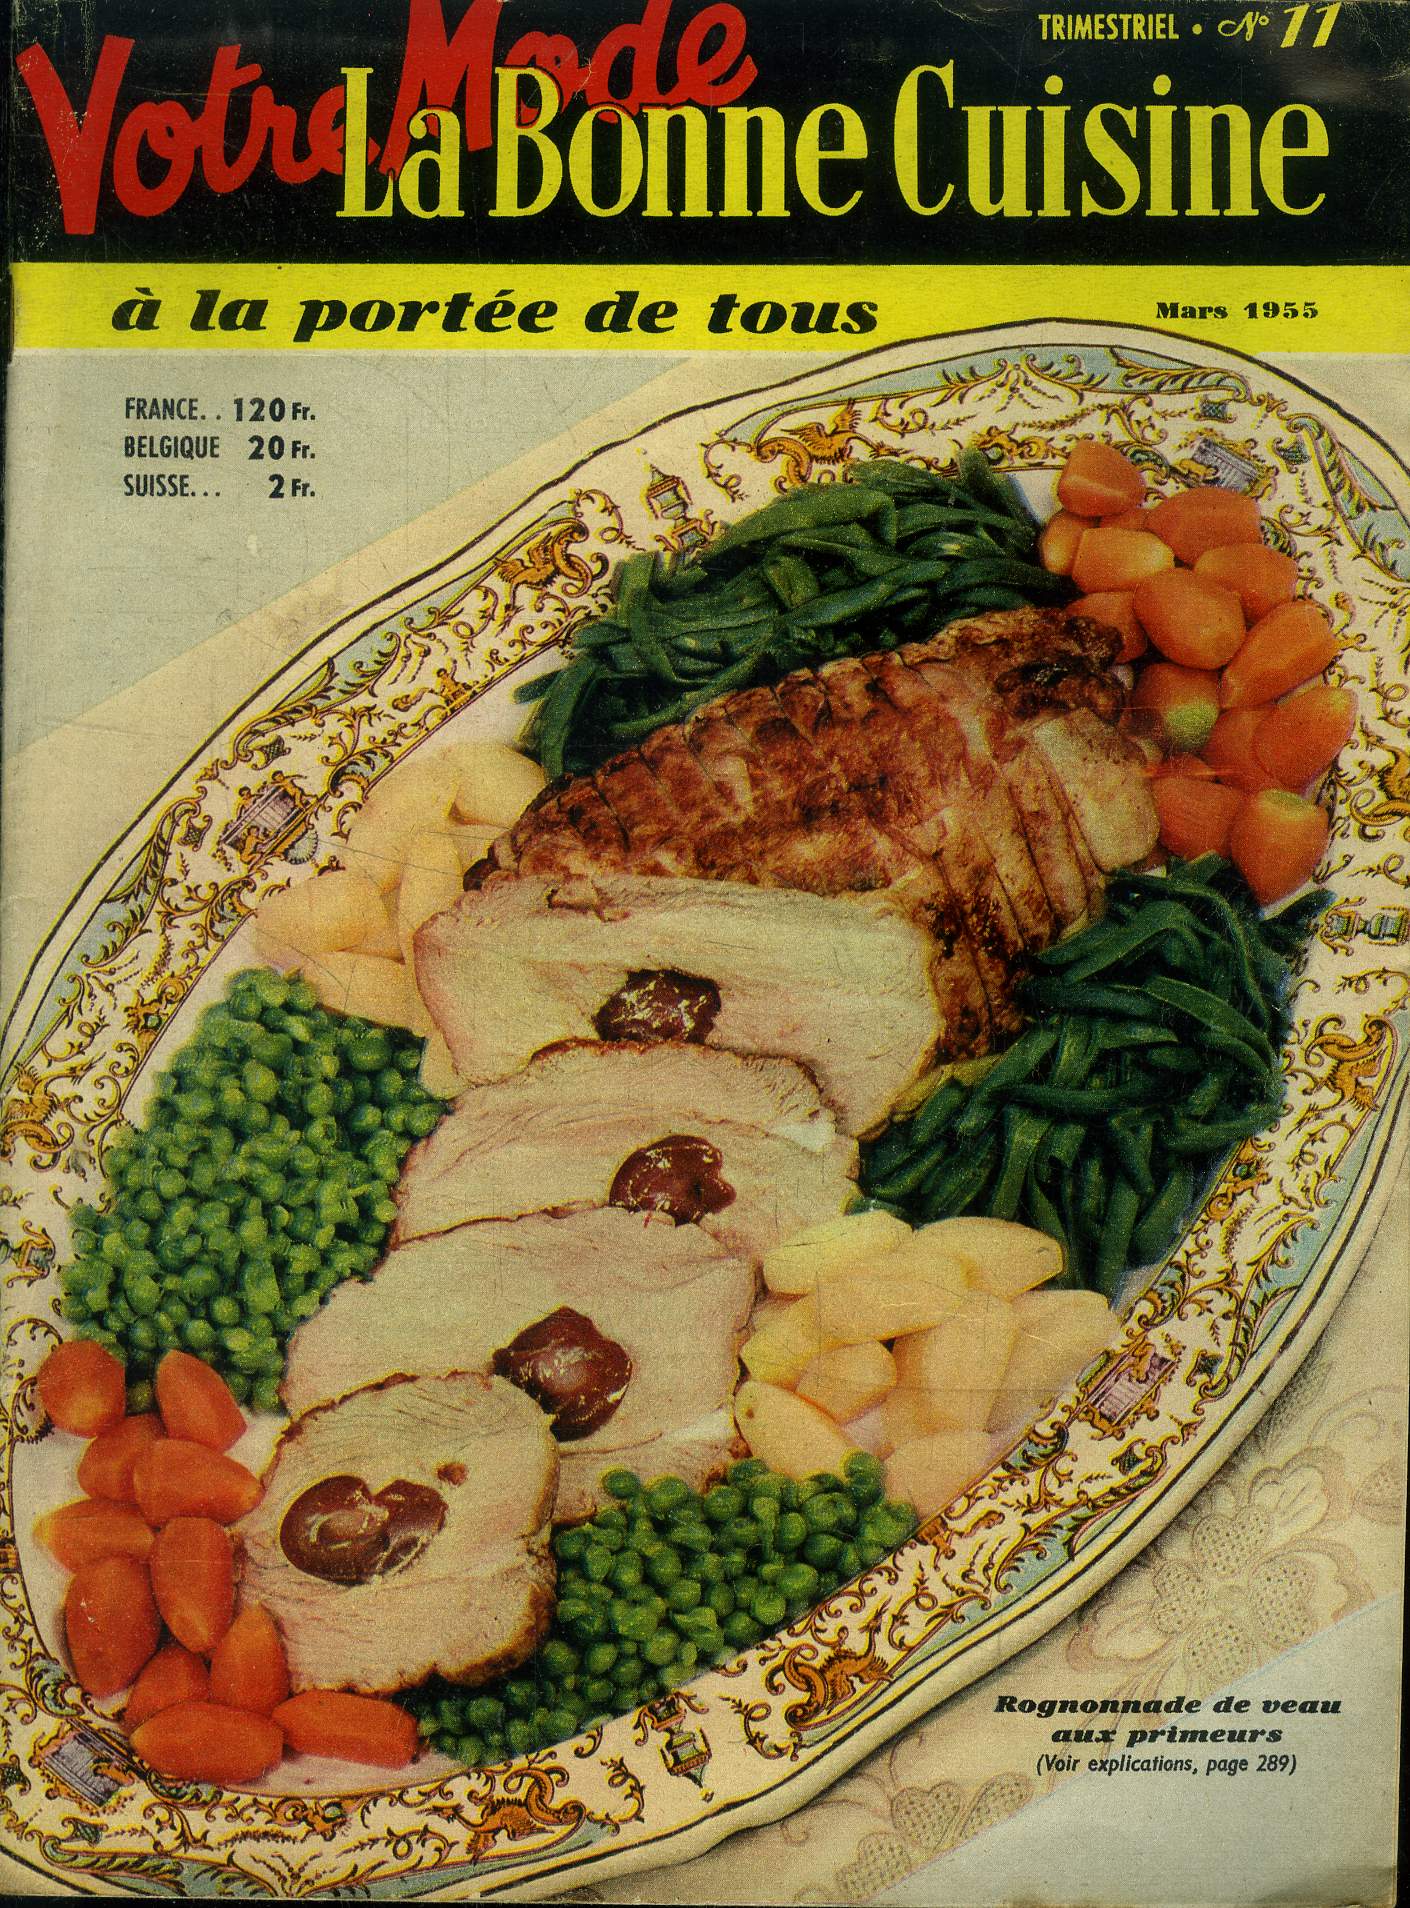 La Bonne cuisine  la porte de tous n 11 - Supplment de Votre Mode de Mars 1955 Anchois aux olives - darne de saumon 